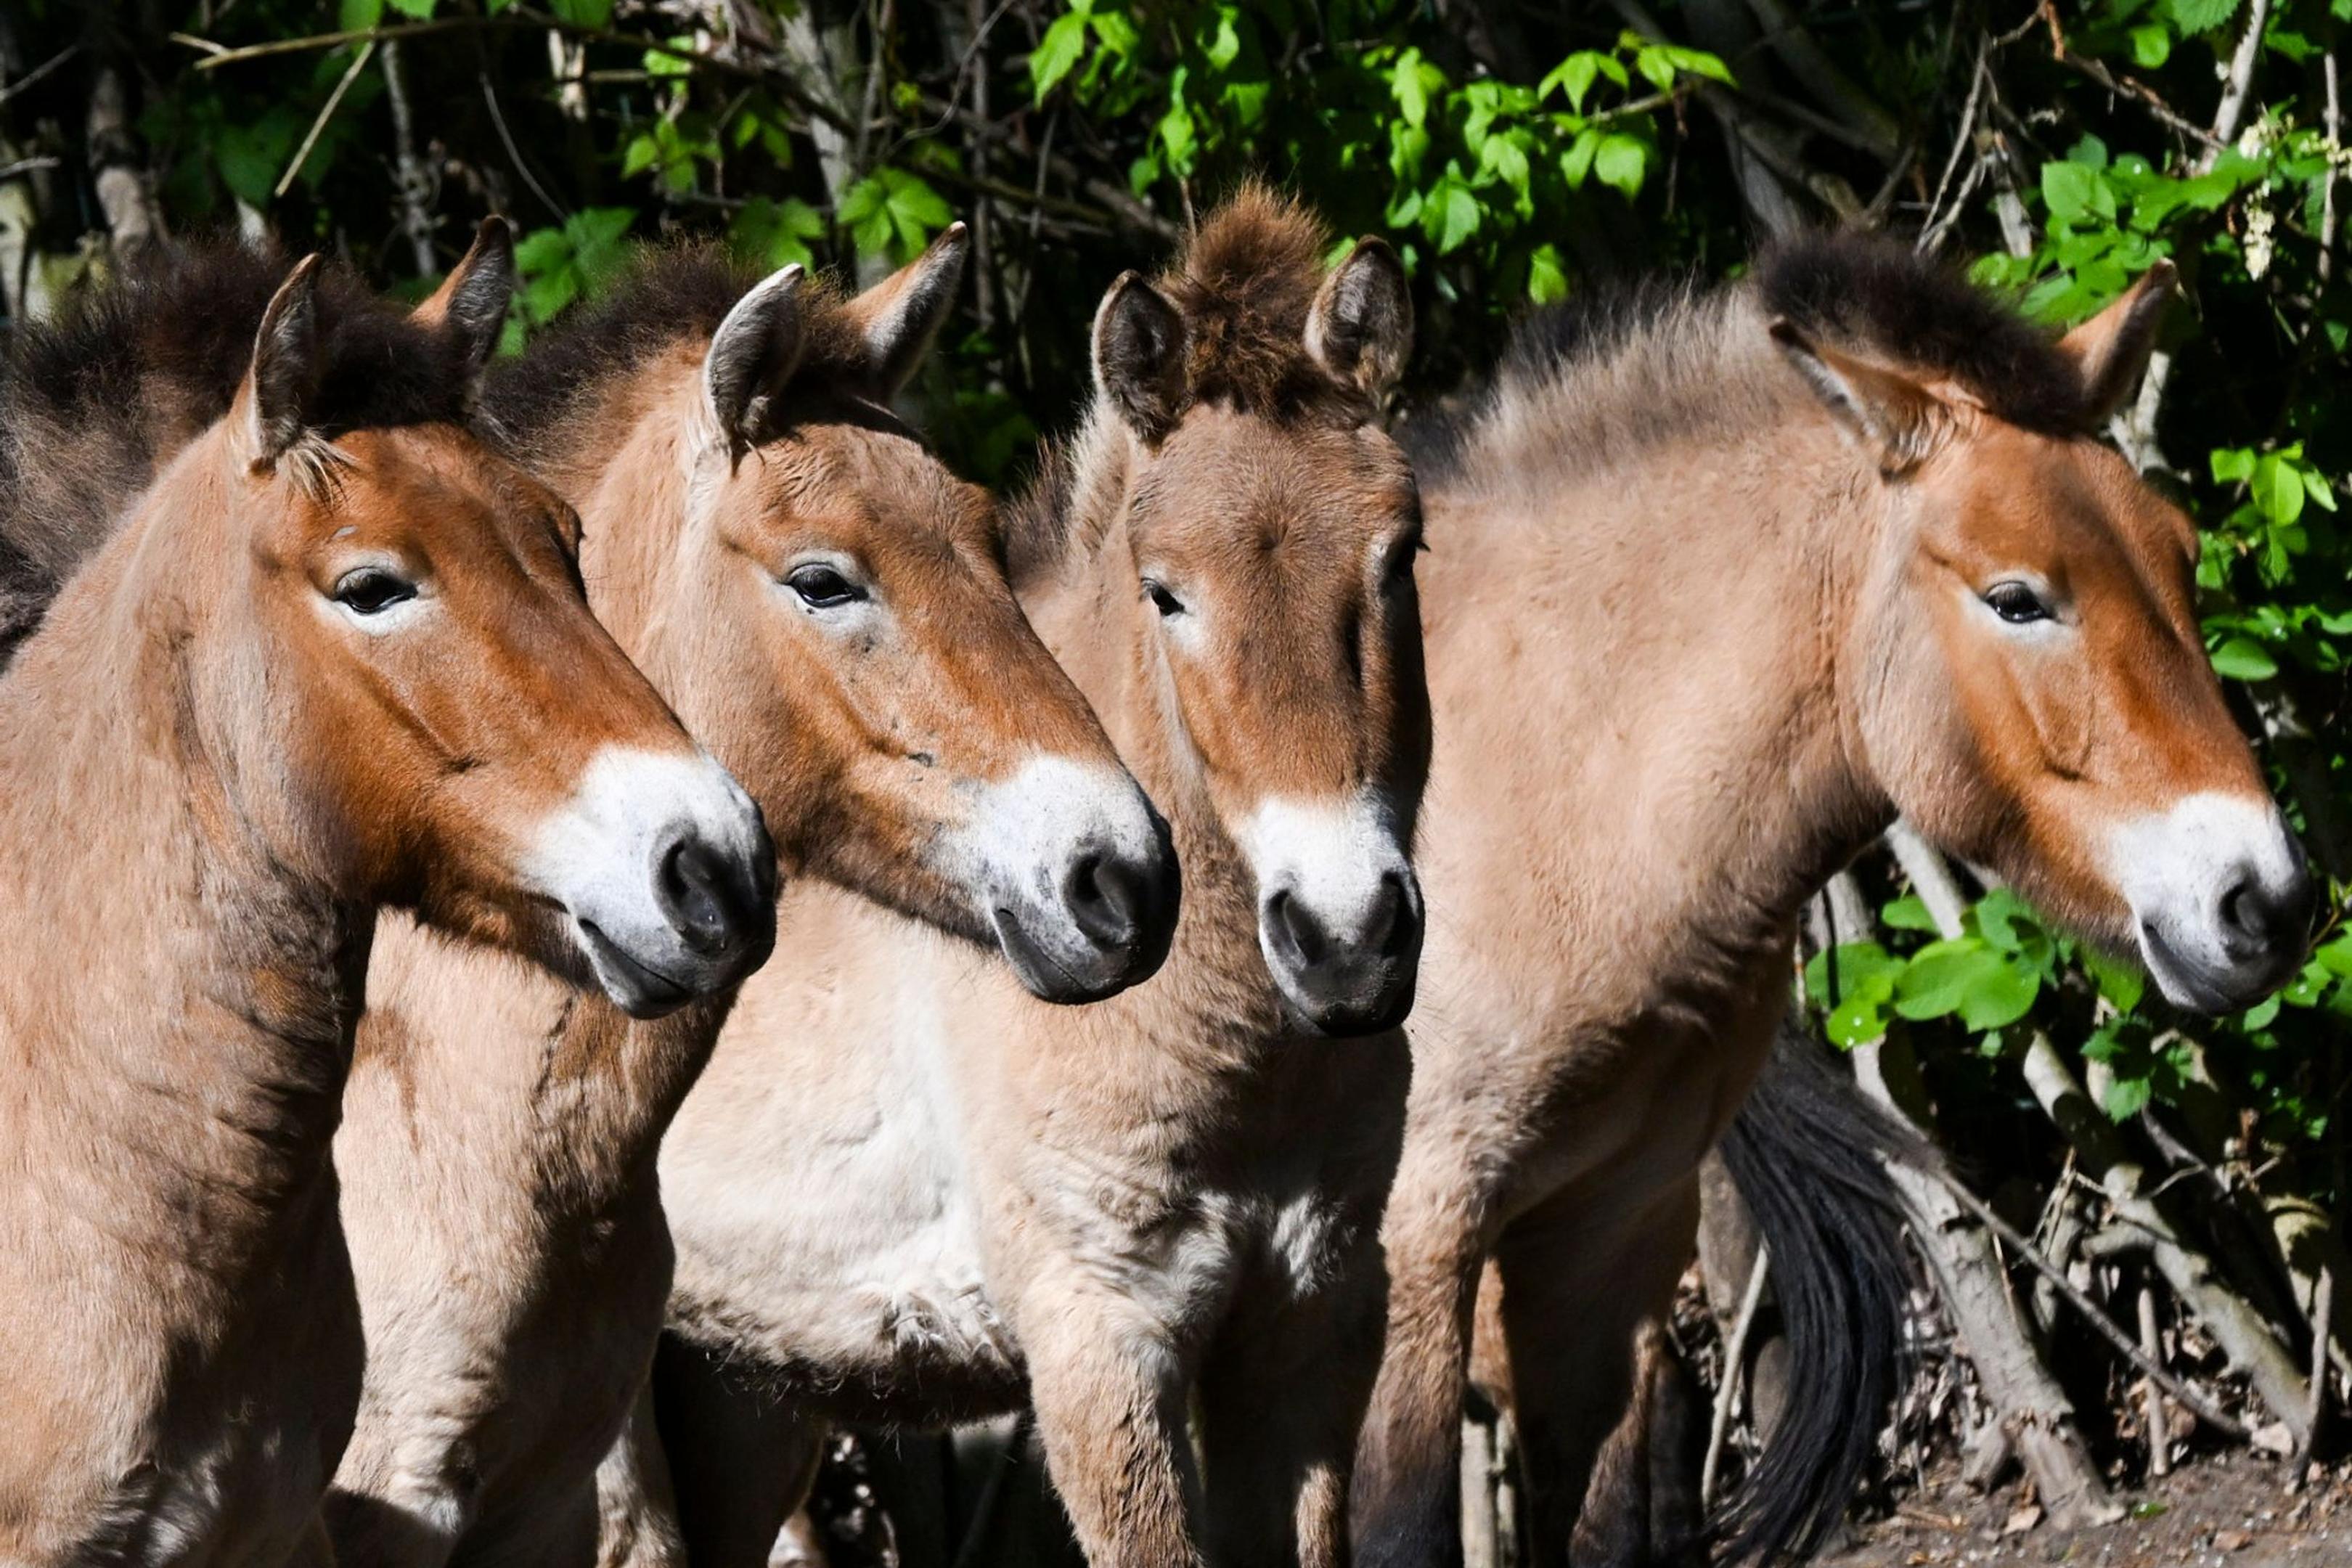 Die im natürlichen Lebensraum als lange Zeit ausgestorben gegoltenen Przewalski-Pferde im Tierpark Berlin.